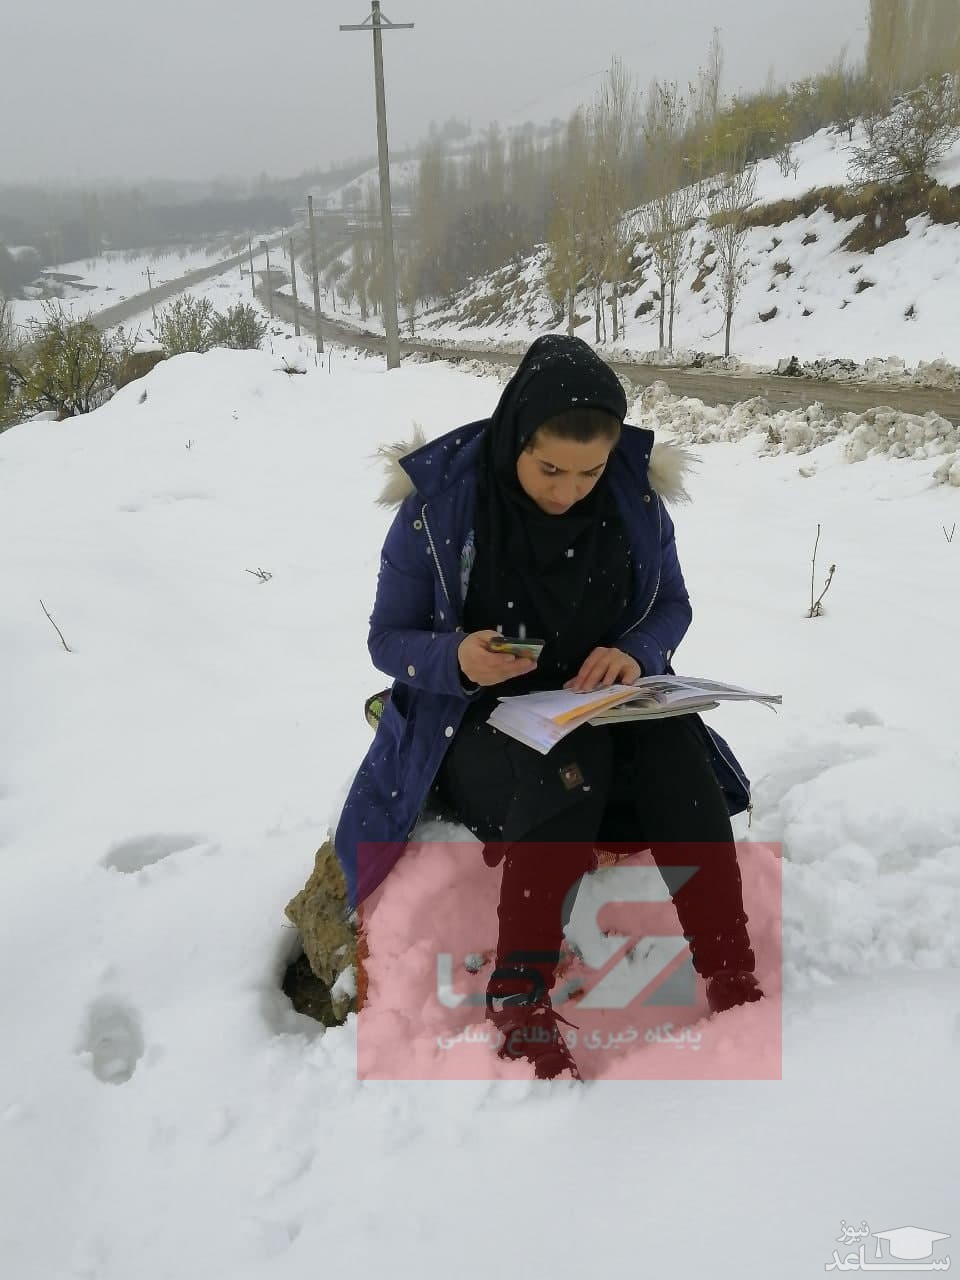 تدریس خانم معلم اشنویه ای نشسته بر برف، وسط بوران / آقای وزیر اینجا موبایل  آنتن نمی دهد! | ساعدنیوز